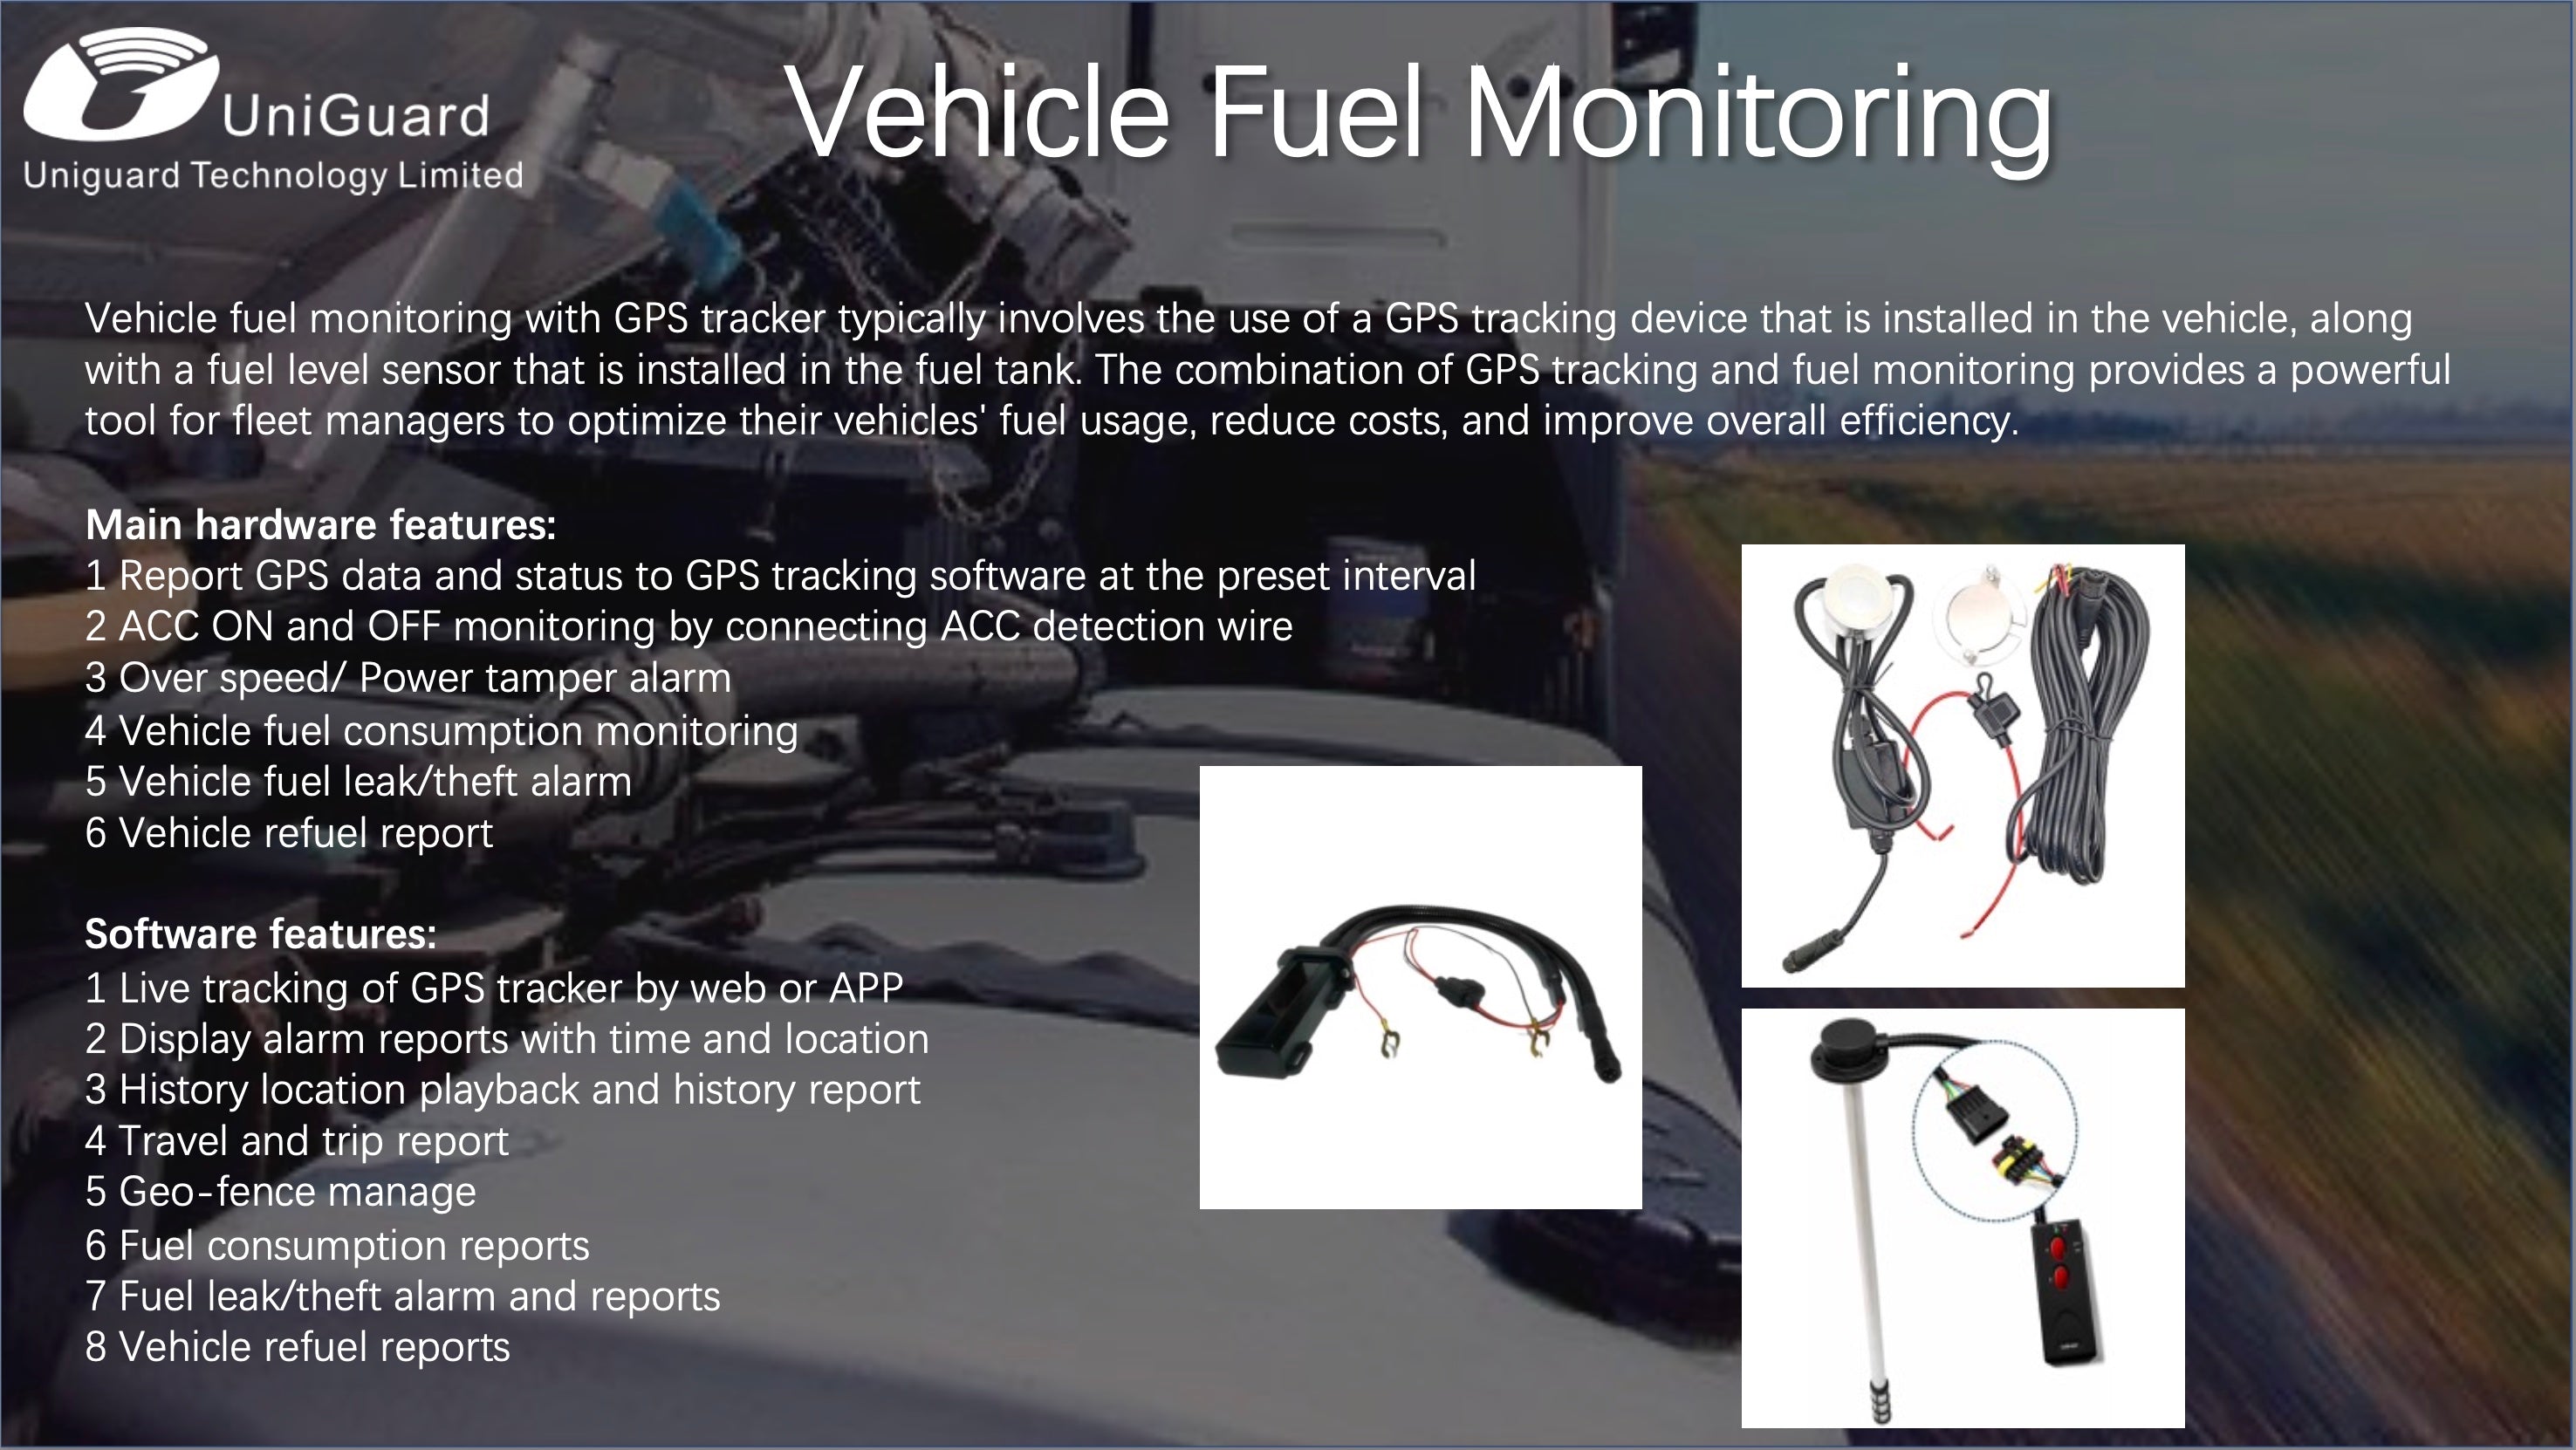 Monitoreo del consumo de combustible del vehículo.